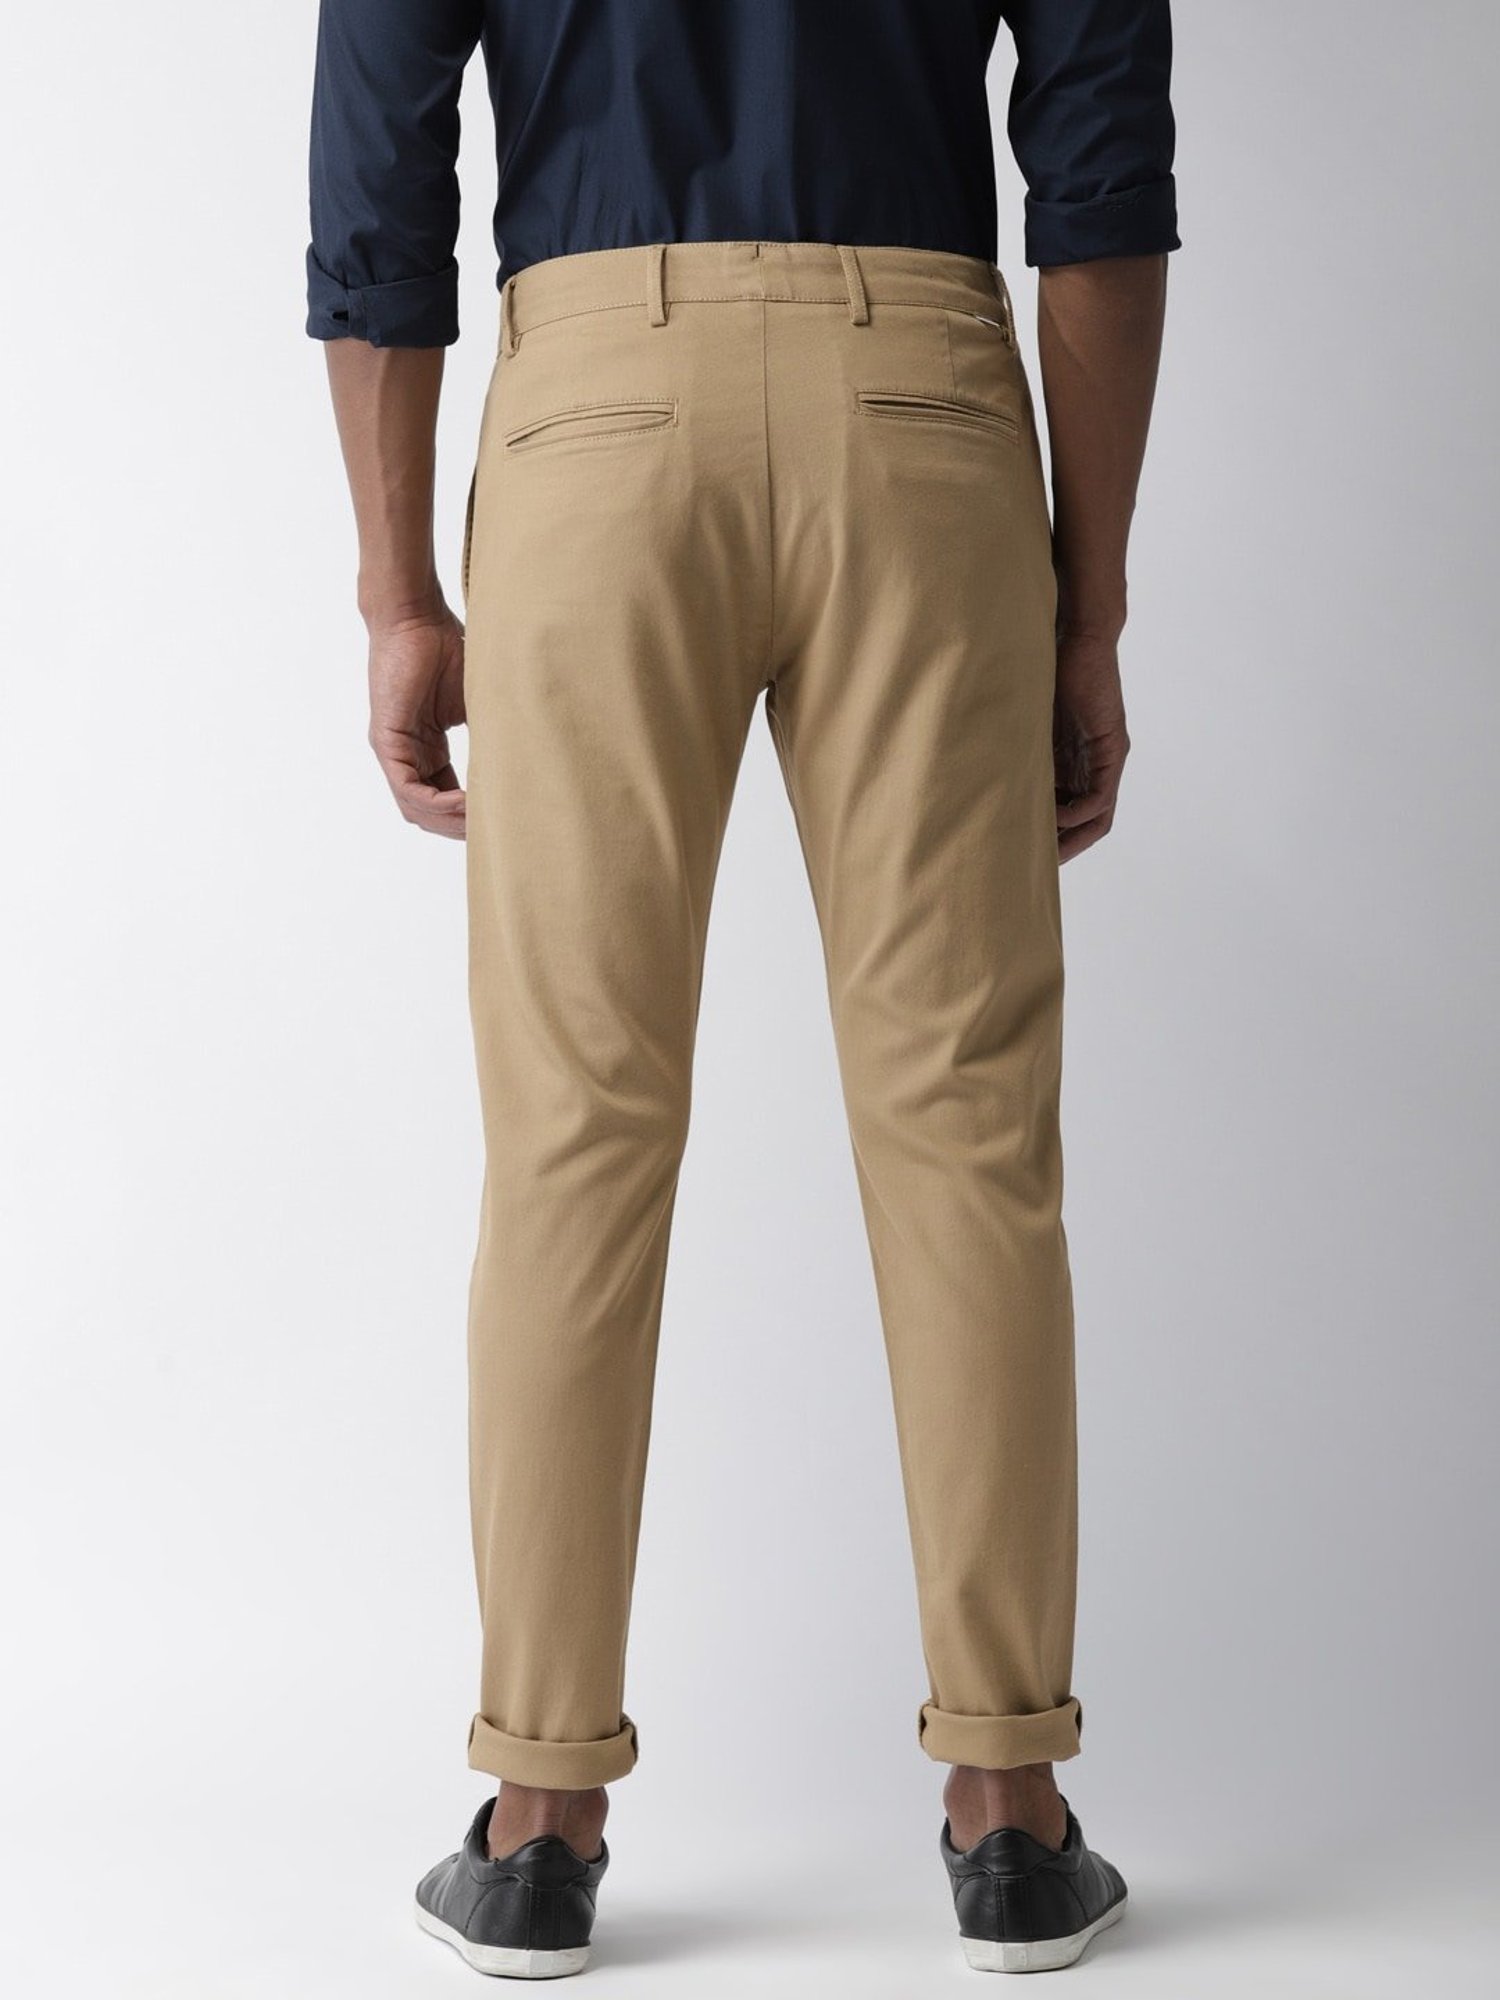 LEVIS Slim Fit Men Khaki Trousers  Buy LEVIS Slim Fit Men Khaki Trousers  Online at Best Prices in India  Flipkartcom